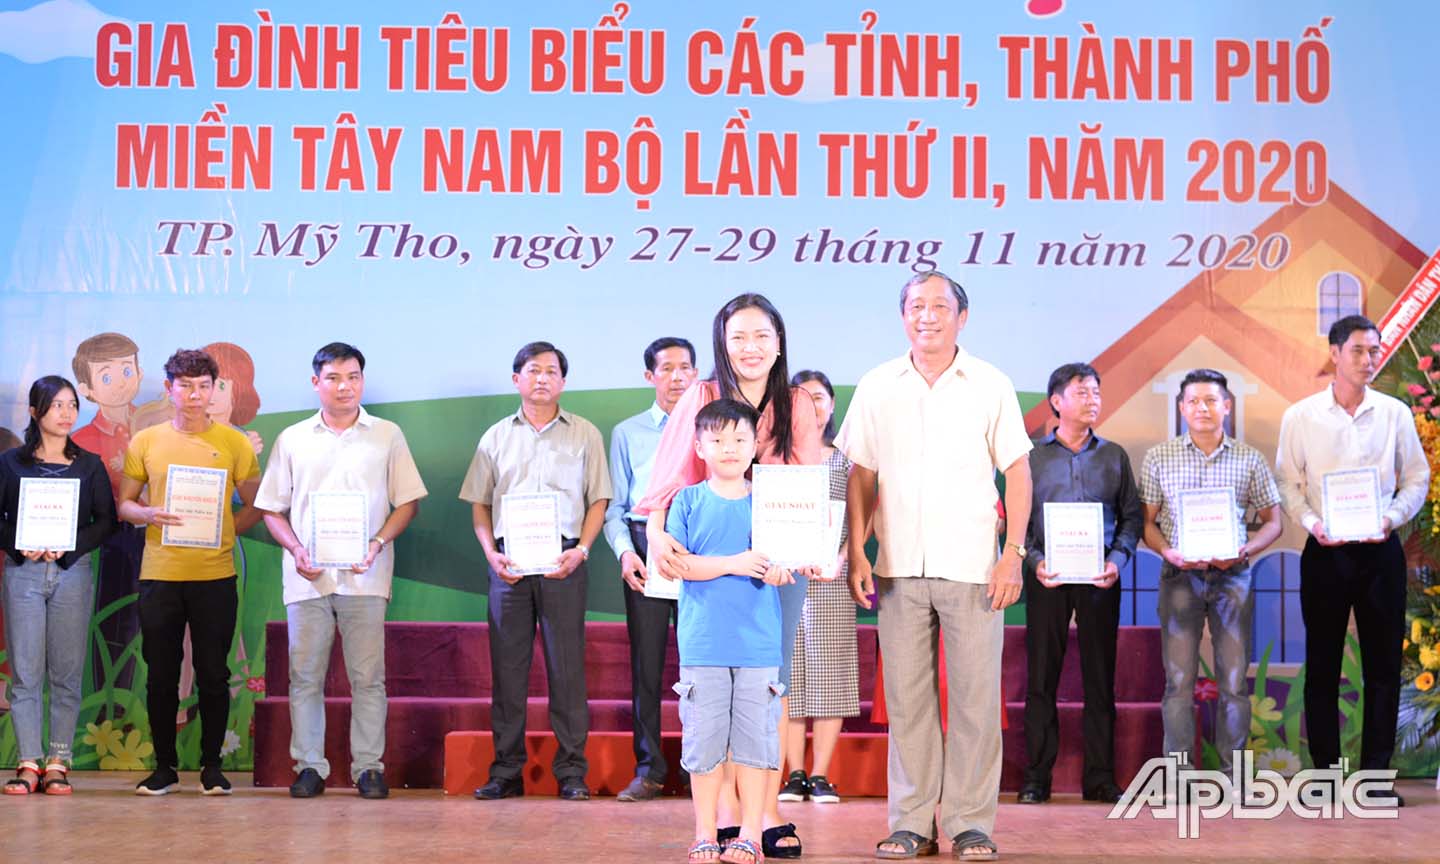 Đồng chí Nguyễn Ngọc Minh, Nguyên Giám đốc Sở VH-TT&DL trao giấy chứng nhận cho gia đình thuộc 